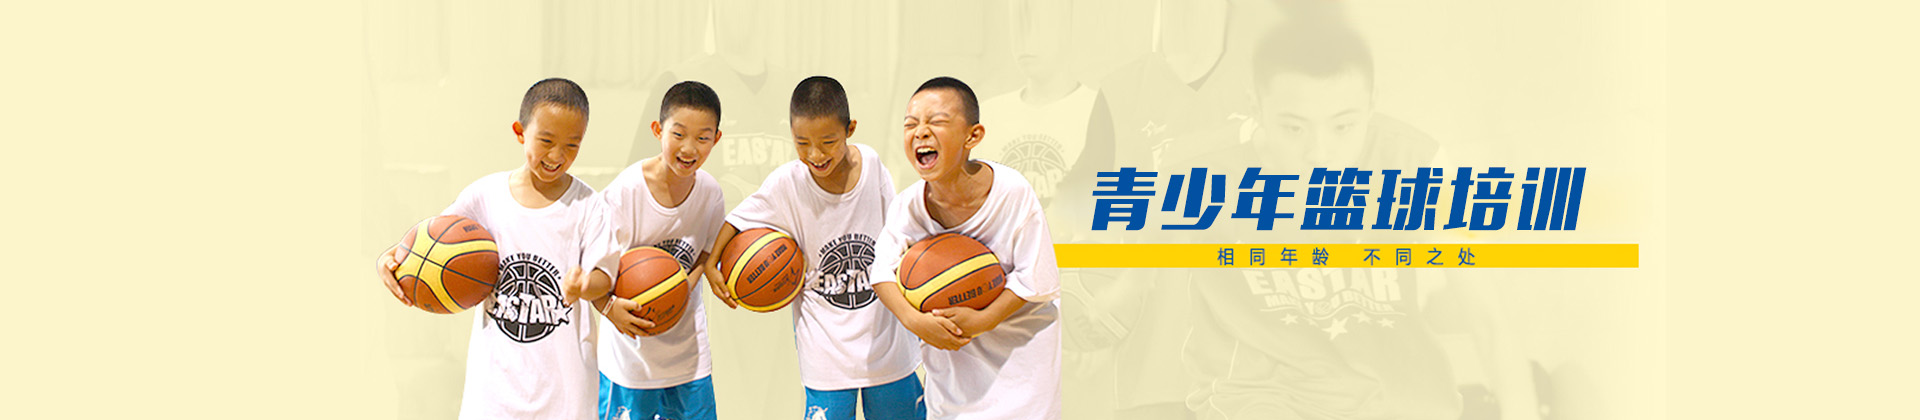 广州东方启明星篮球培训机构